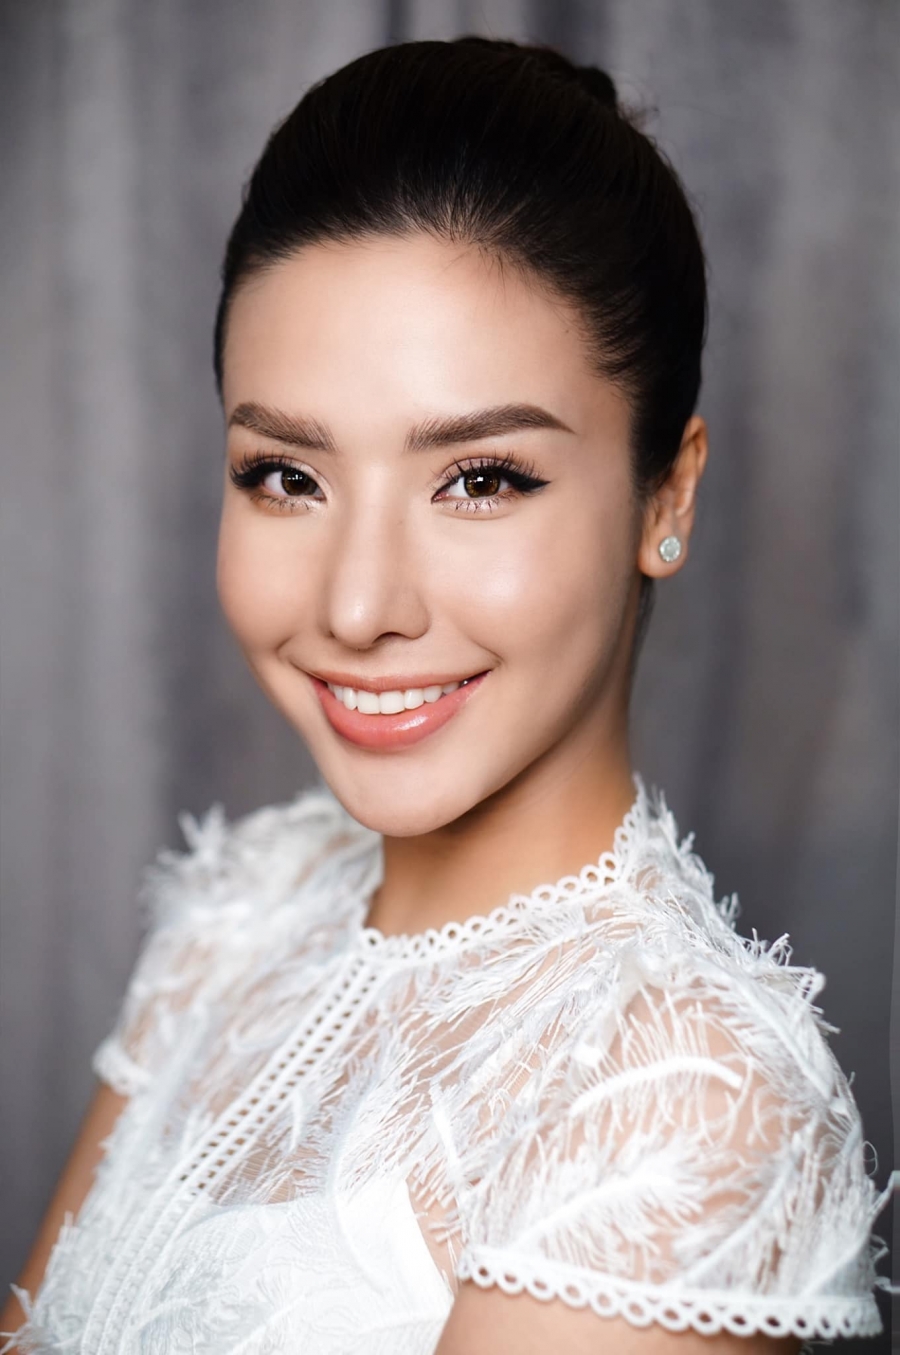 Khánh Phương từng đại diễn Việt Nam tham dự Miss Supranational (Hoa hậu siêu quốc gia) 2017 tổ chức ở Slovakia và Ba Lan, dừng chân ở Top 25.